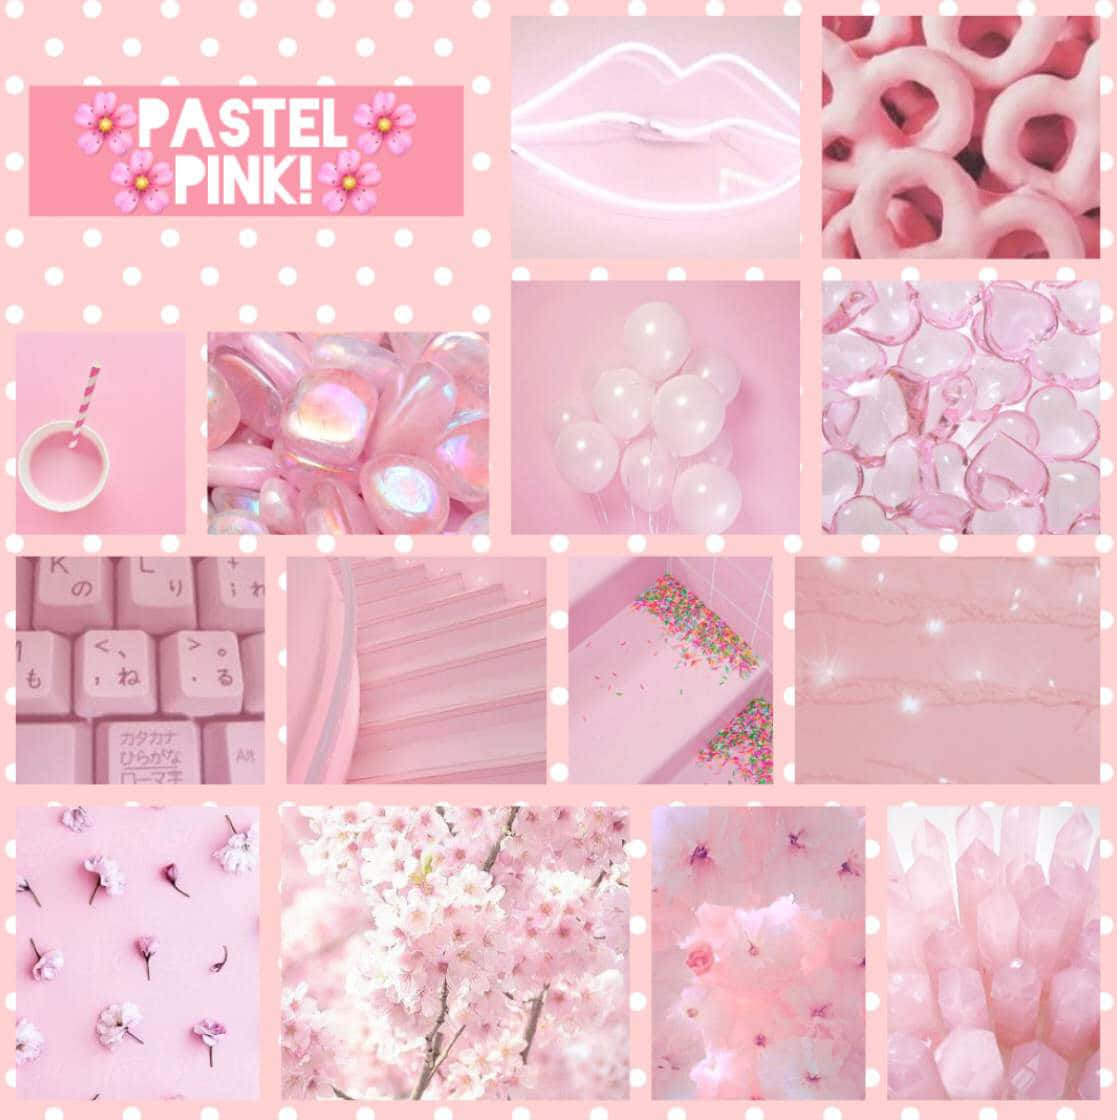 Gåför En Pastellrosa Estetisk Look Med Denna Rosa Och Vita Tapet!